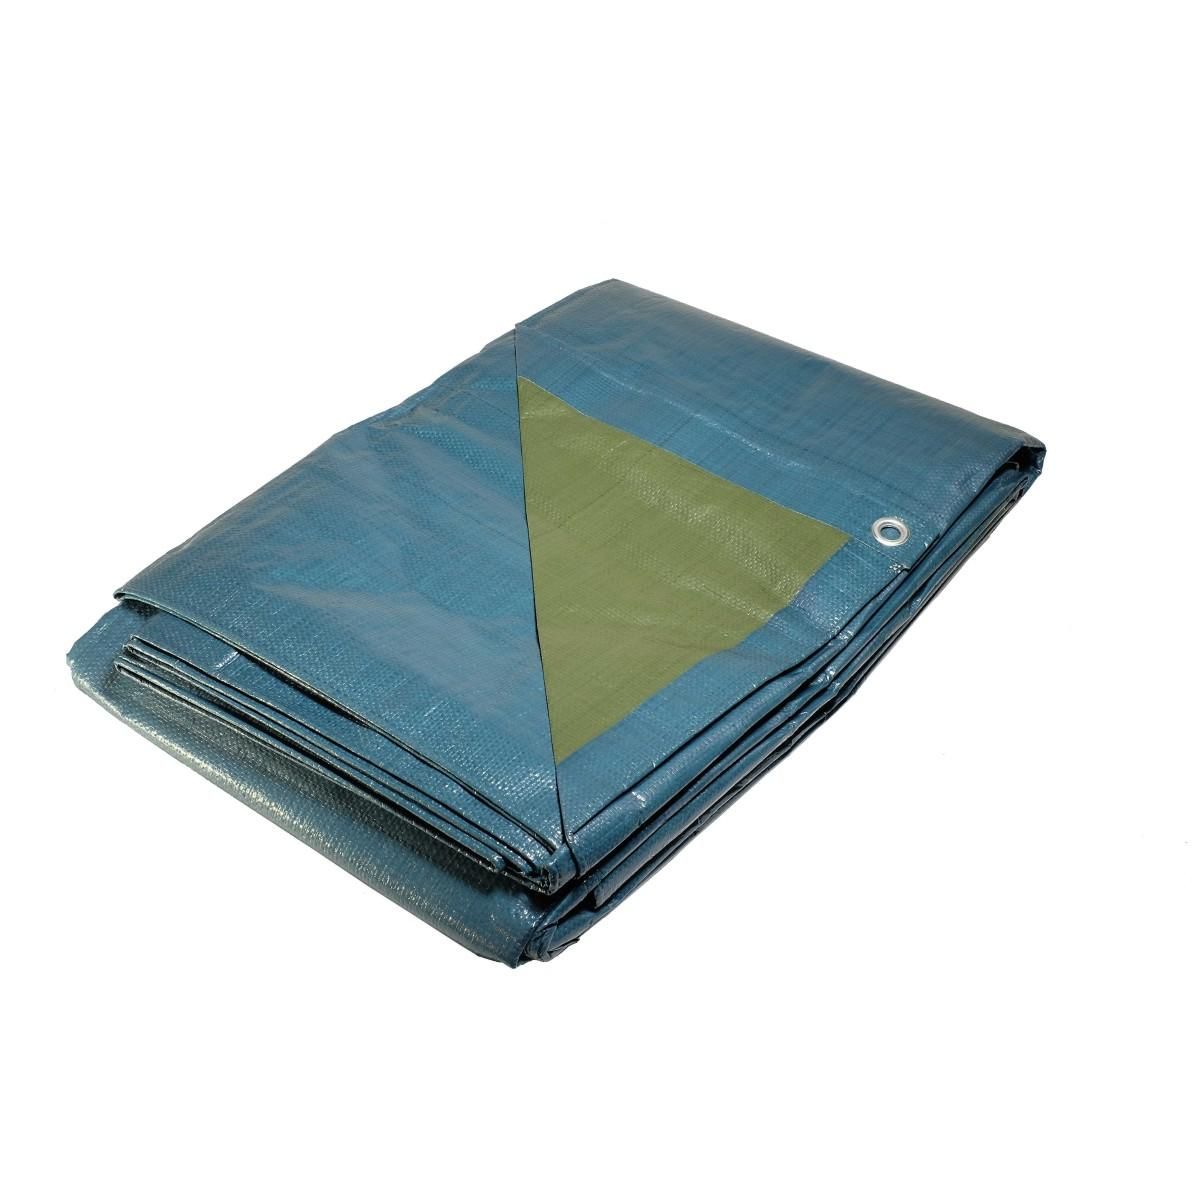 Tecplast Bâche plastique 5x8 m bleue et verte 150g/m2 - bâche de protection polyéthylène